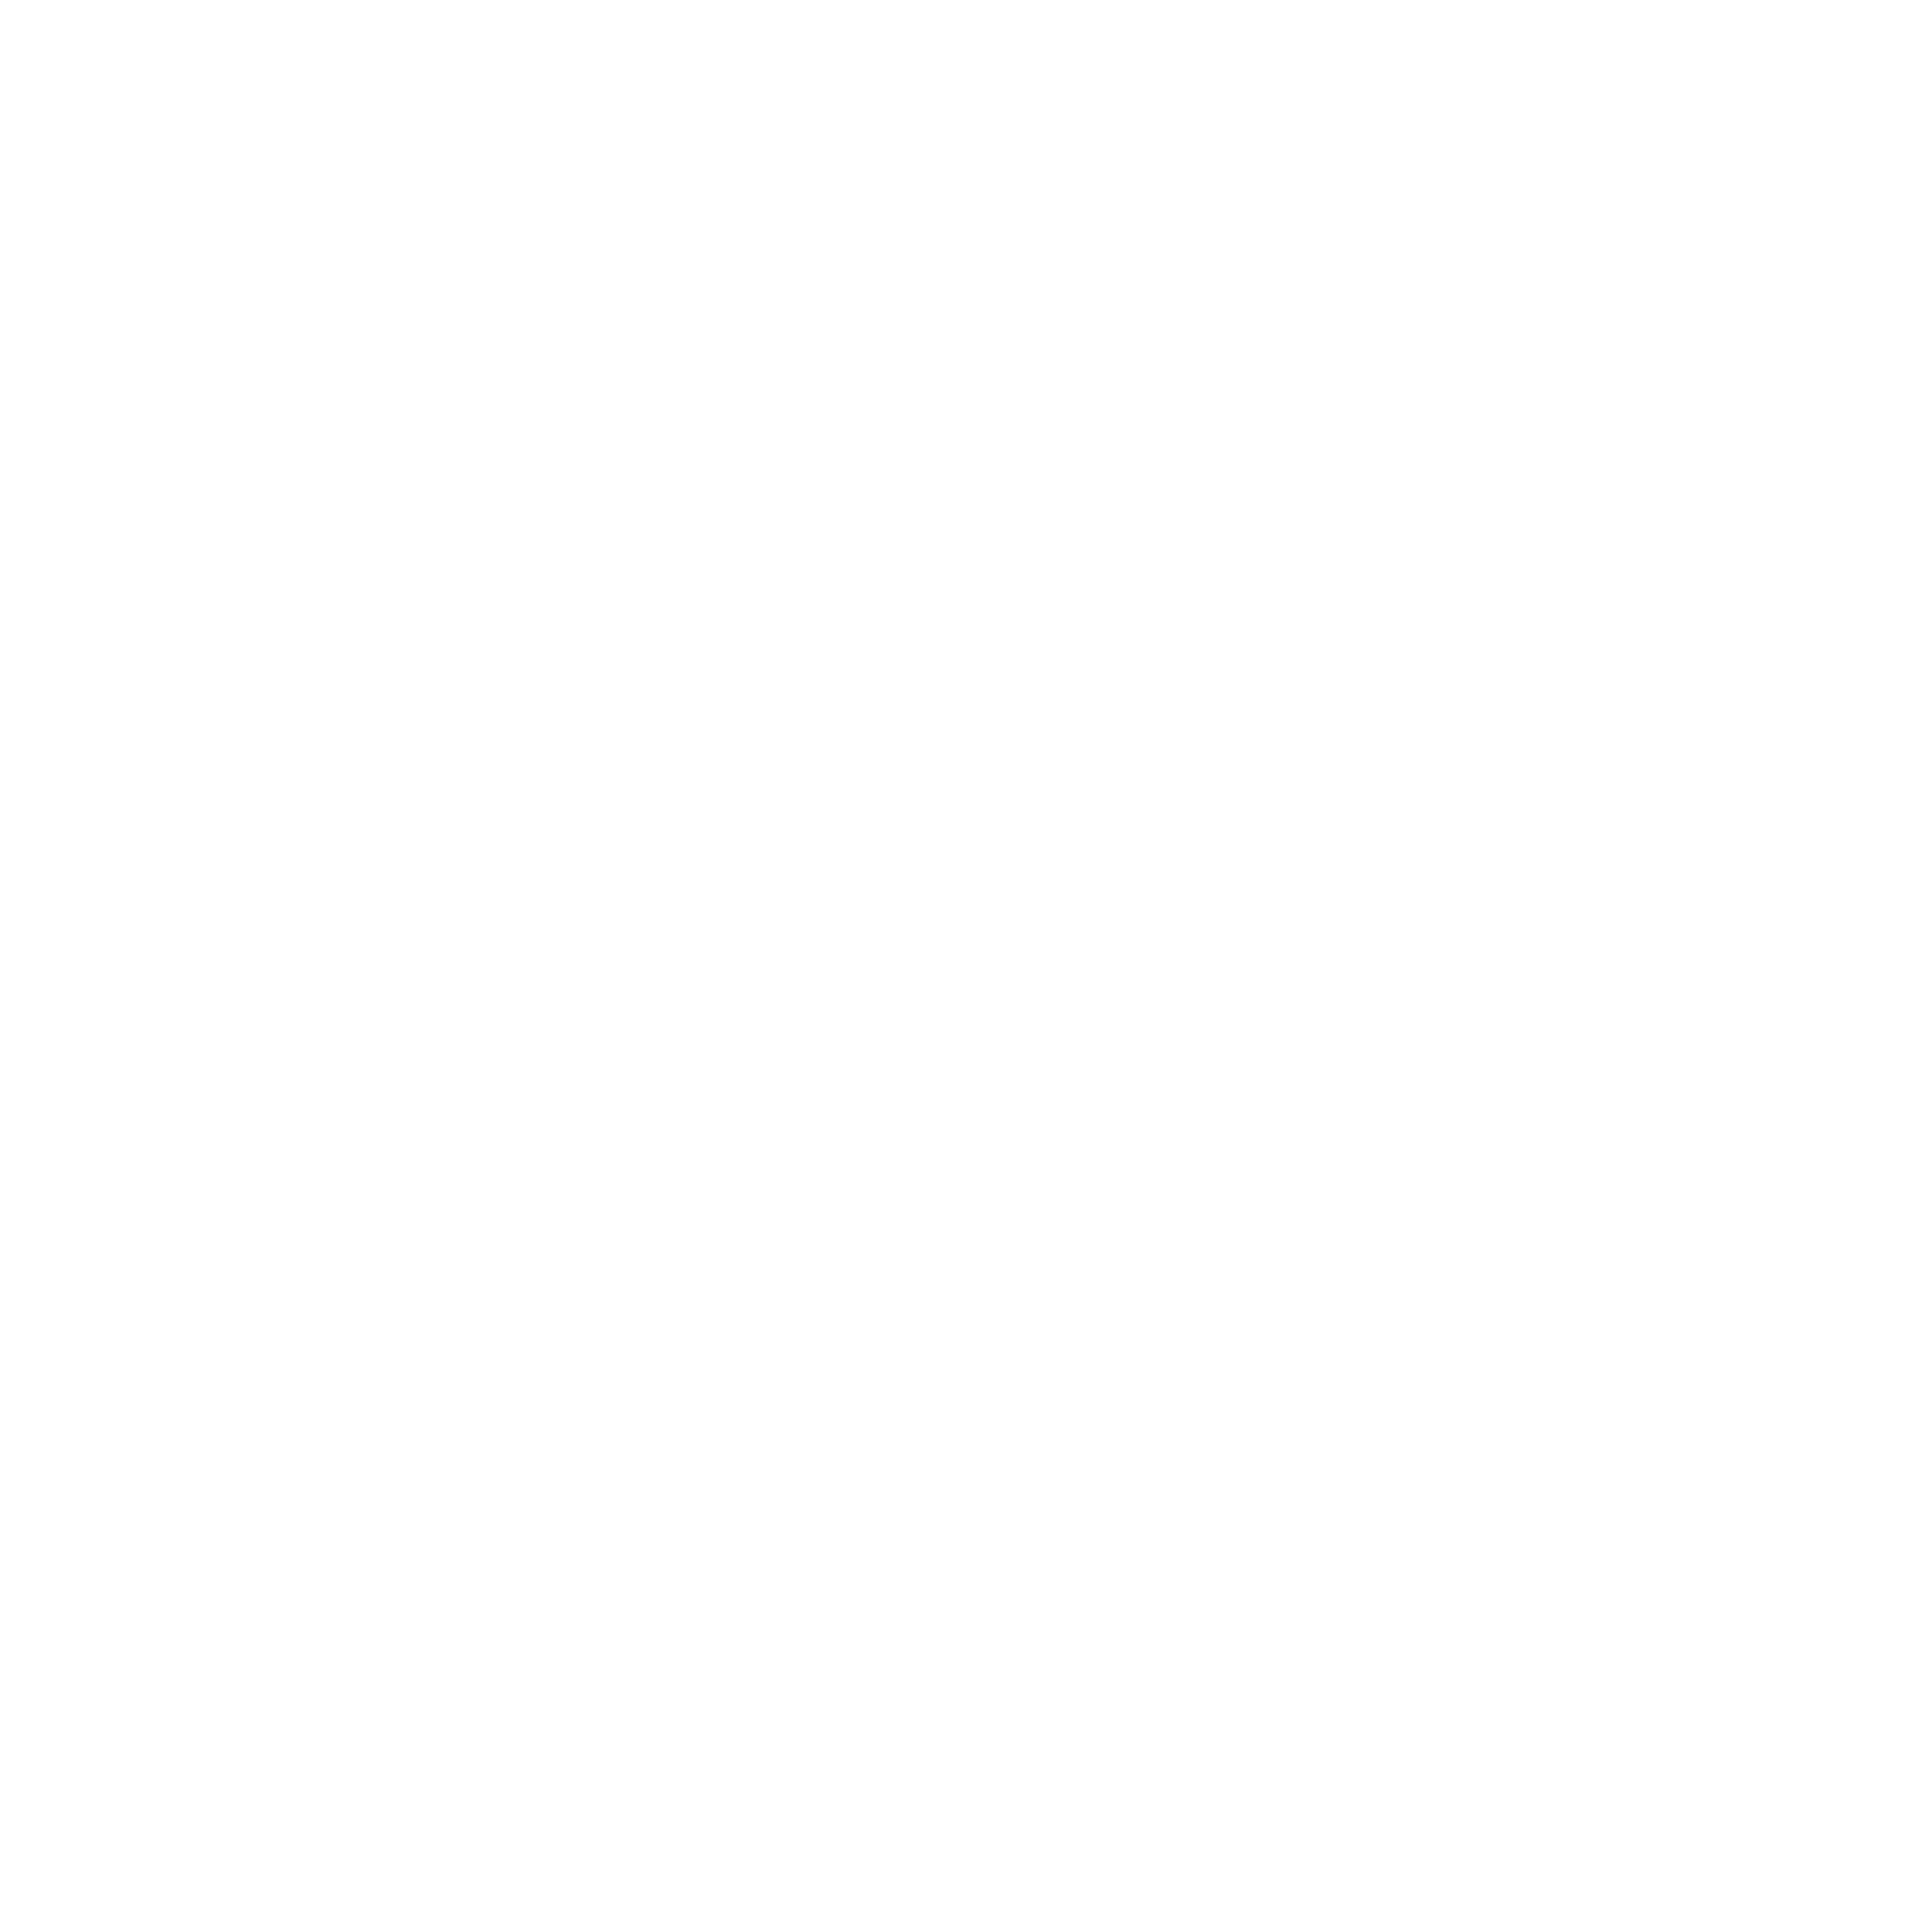 Fb-logo-2000x2000